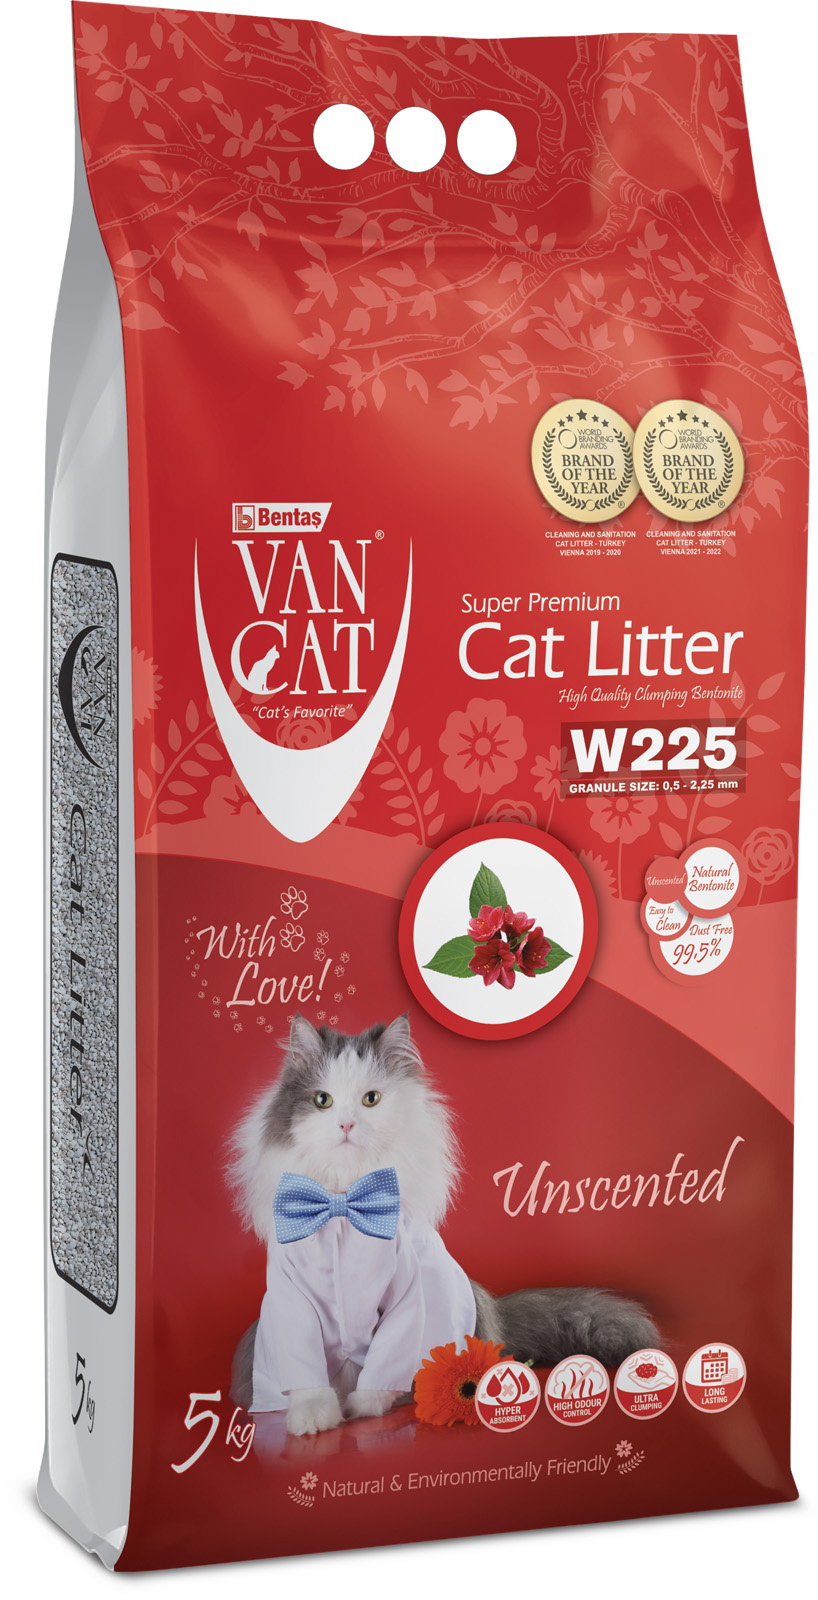 Van Cat Van Cat комкующийся наполнитель 100% натуральный, без пыли, пакет (5 кг) van cat van cat комкующийся наполнитель 100% натуральный без пыли пакет 5 кг